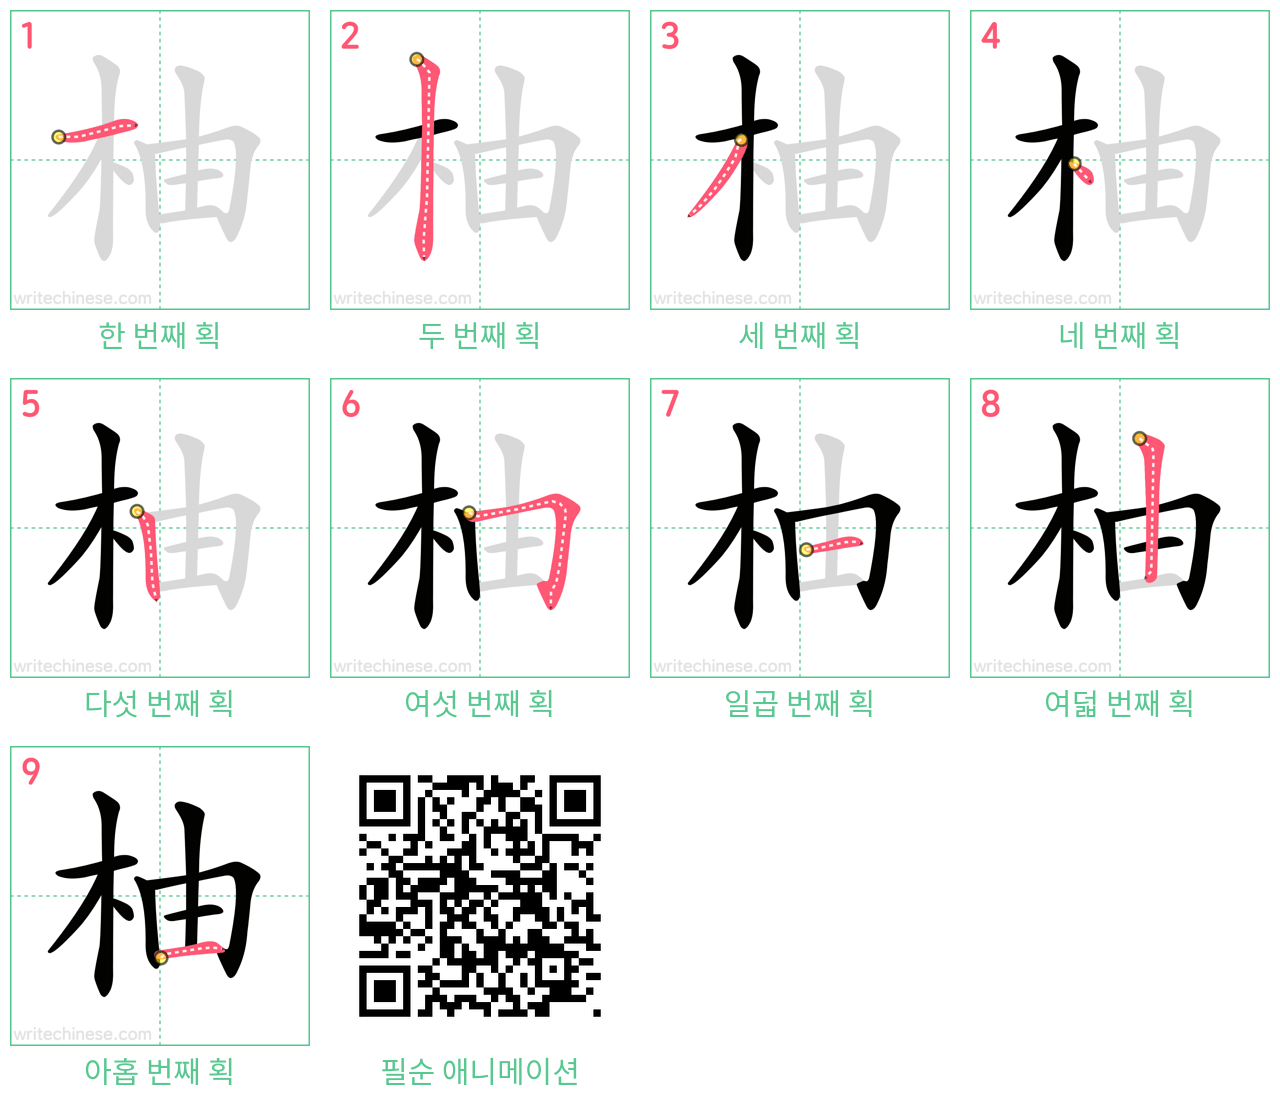 柚 step-by-step stroke order diagrams